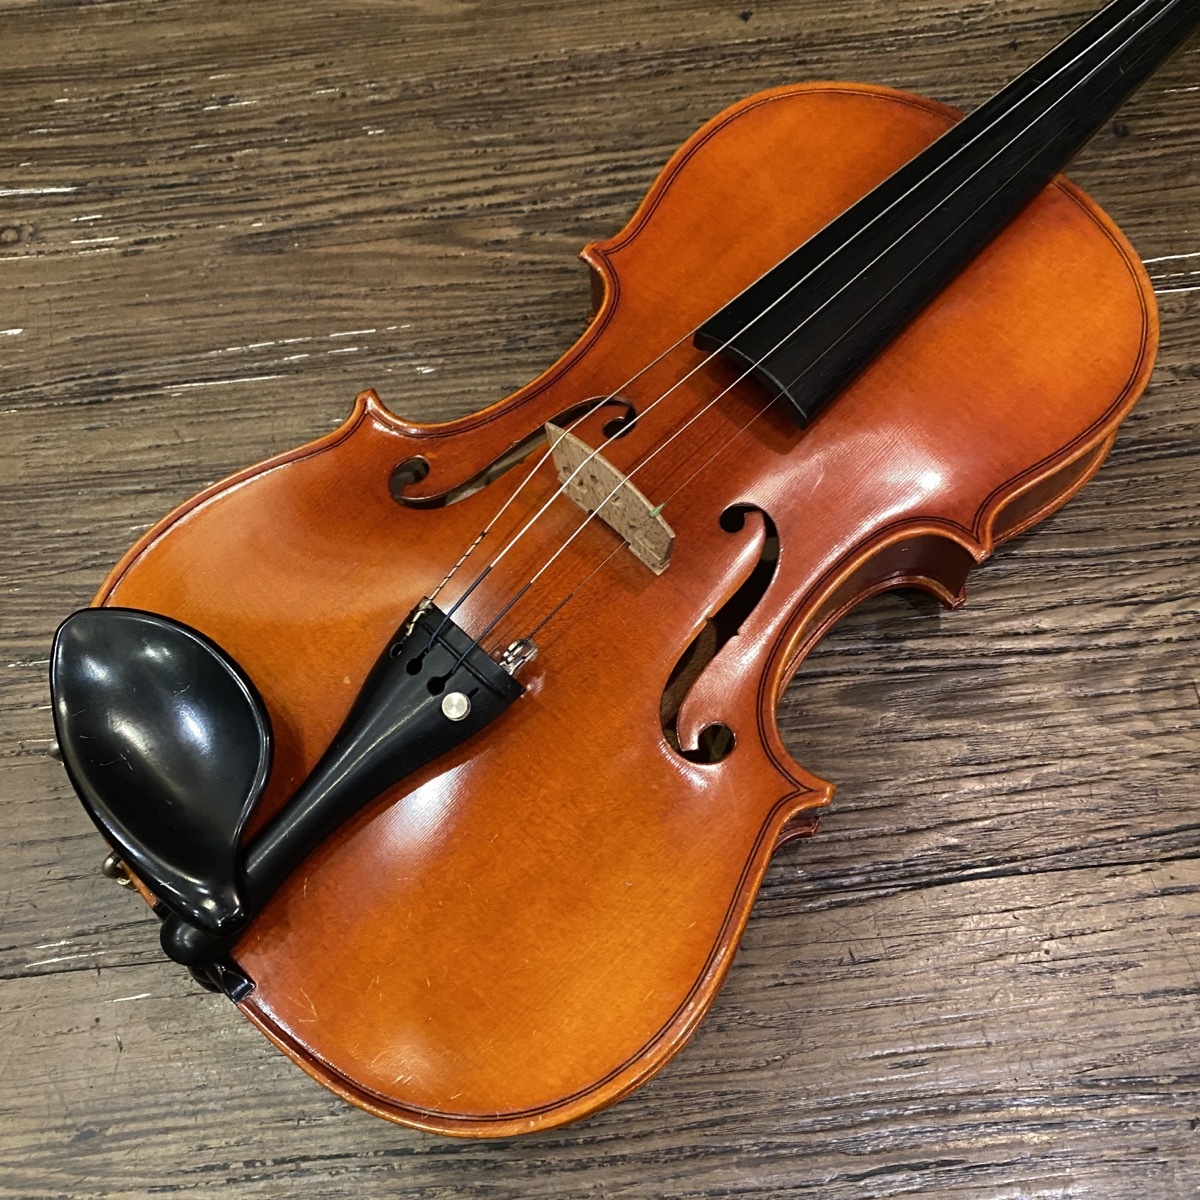 Suzuki No.280 4/4 1980年 Violin スズキ バイオリン -GrunSound-x507- 